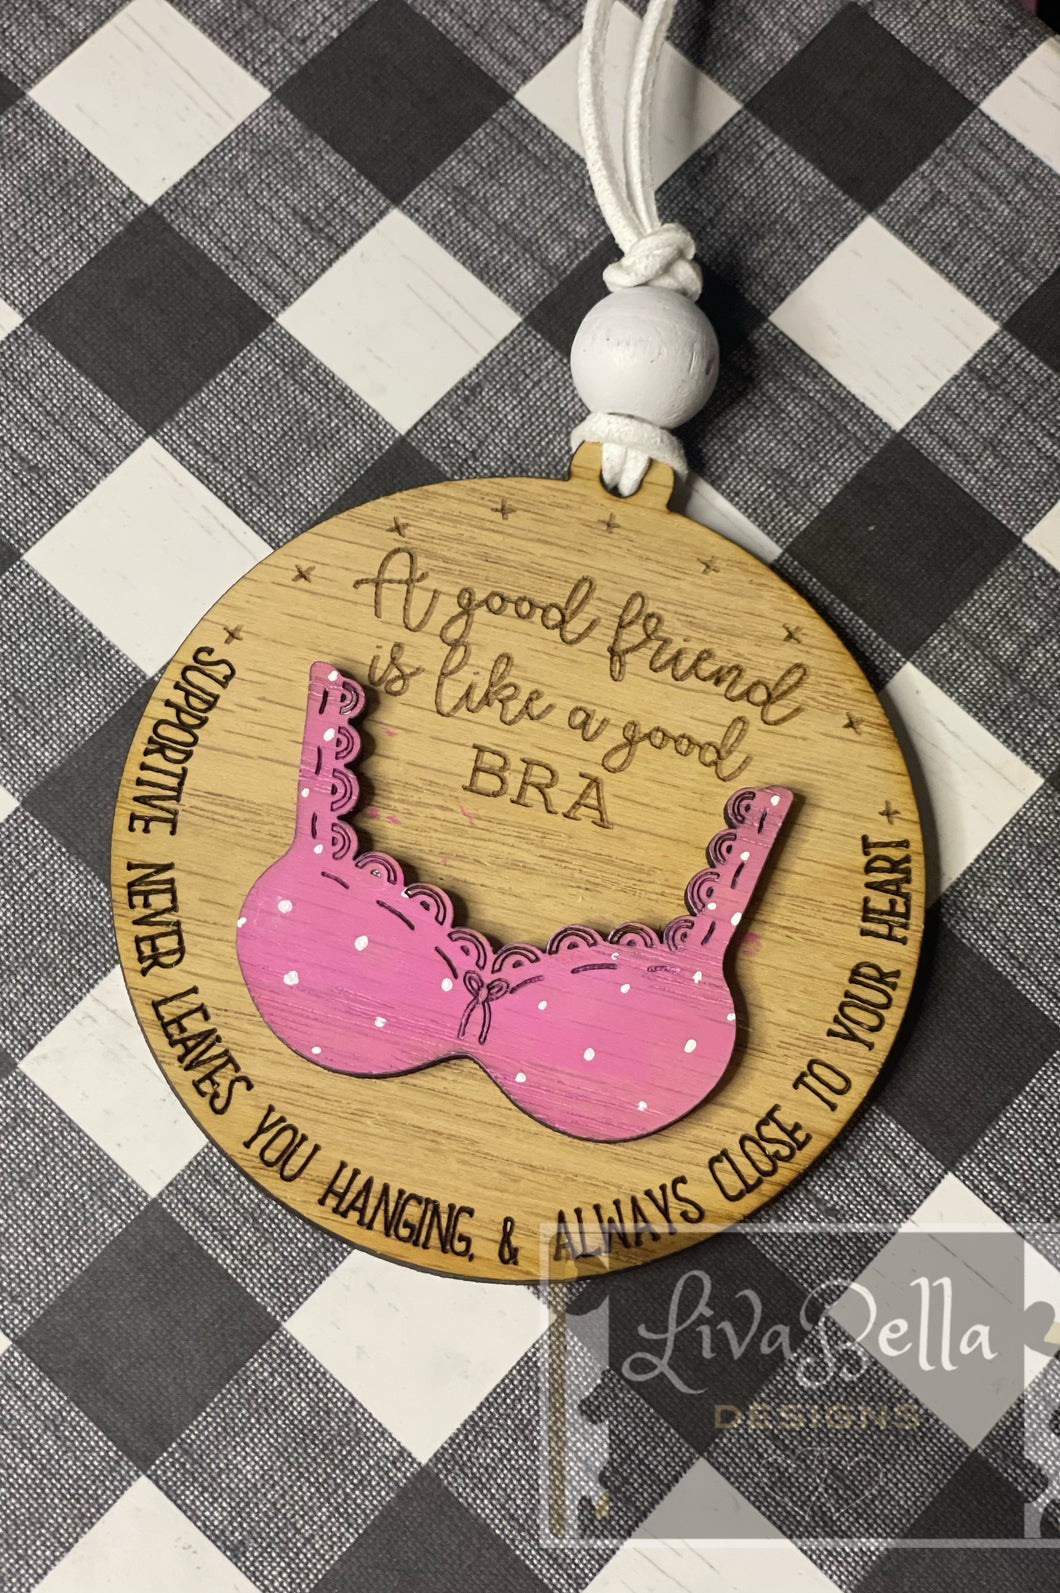 Friend Bra Ornament - a good friend is like a bra